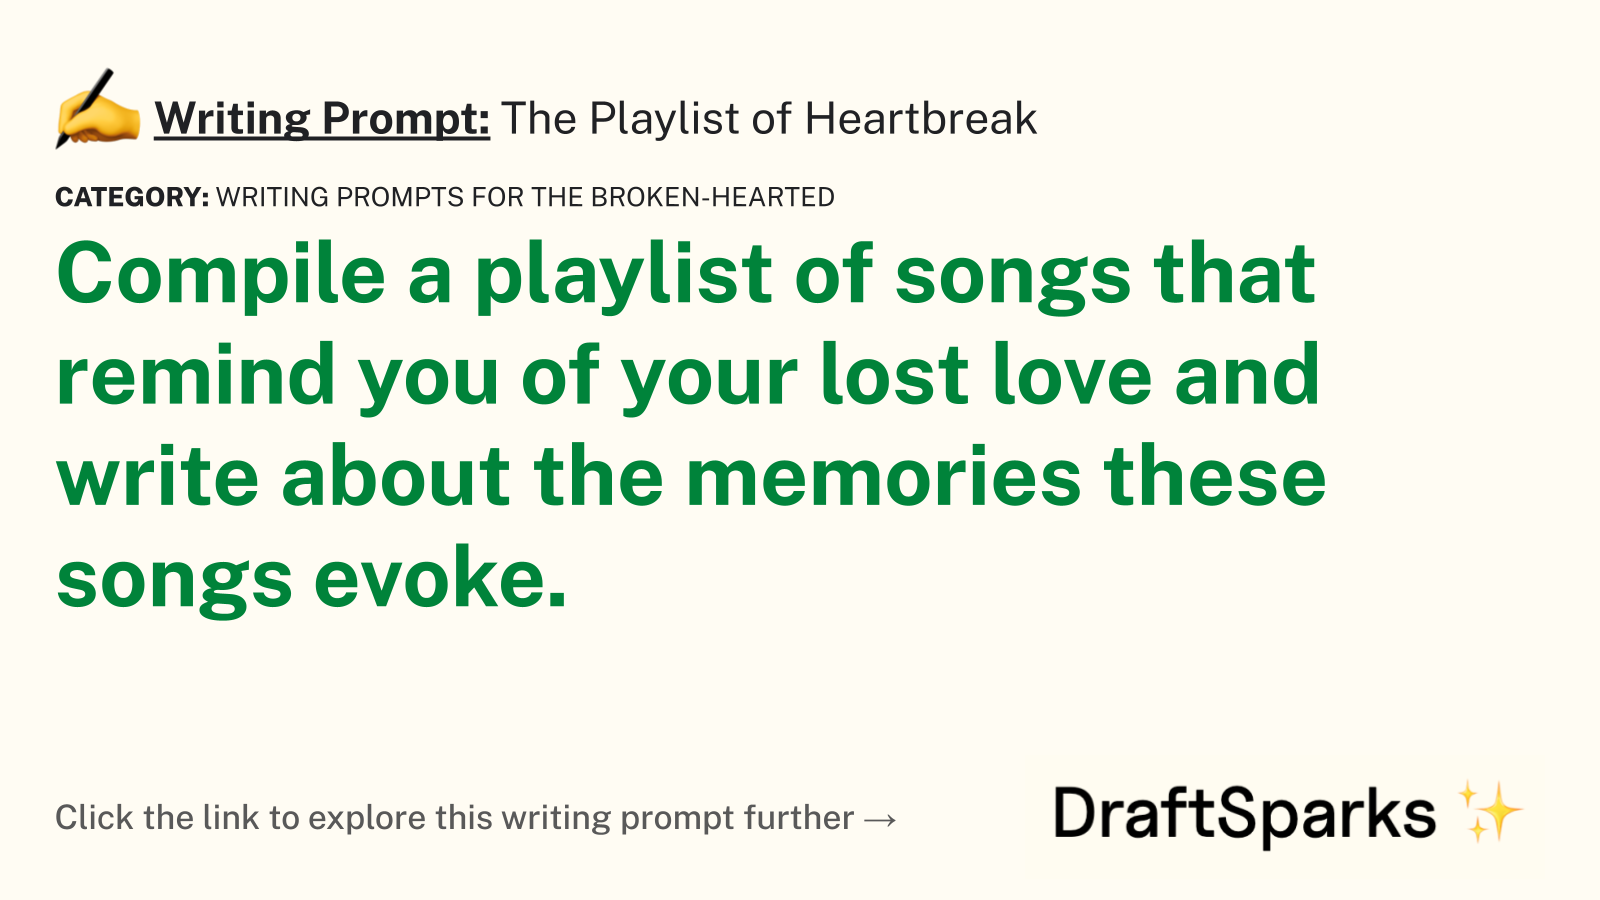 The Playlist of Heartbreak